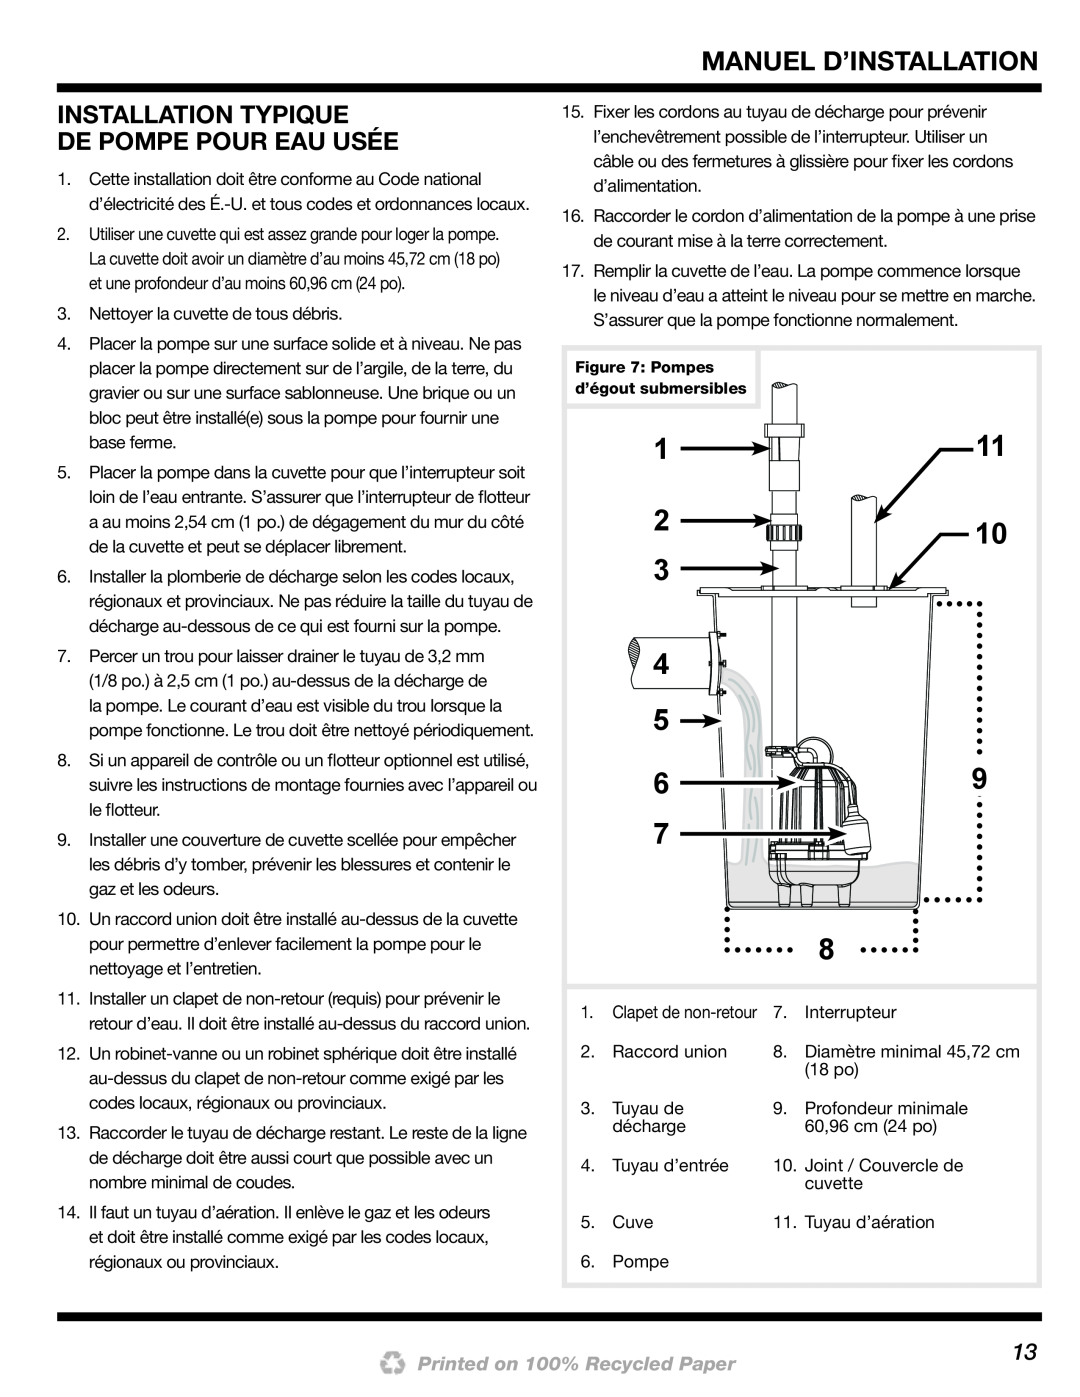 Wayne 200000-015 installation manual Installation Typique De Pompe Pour Eau Usée 